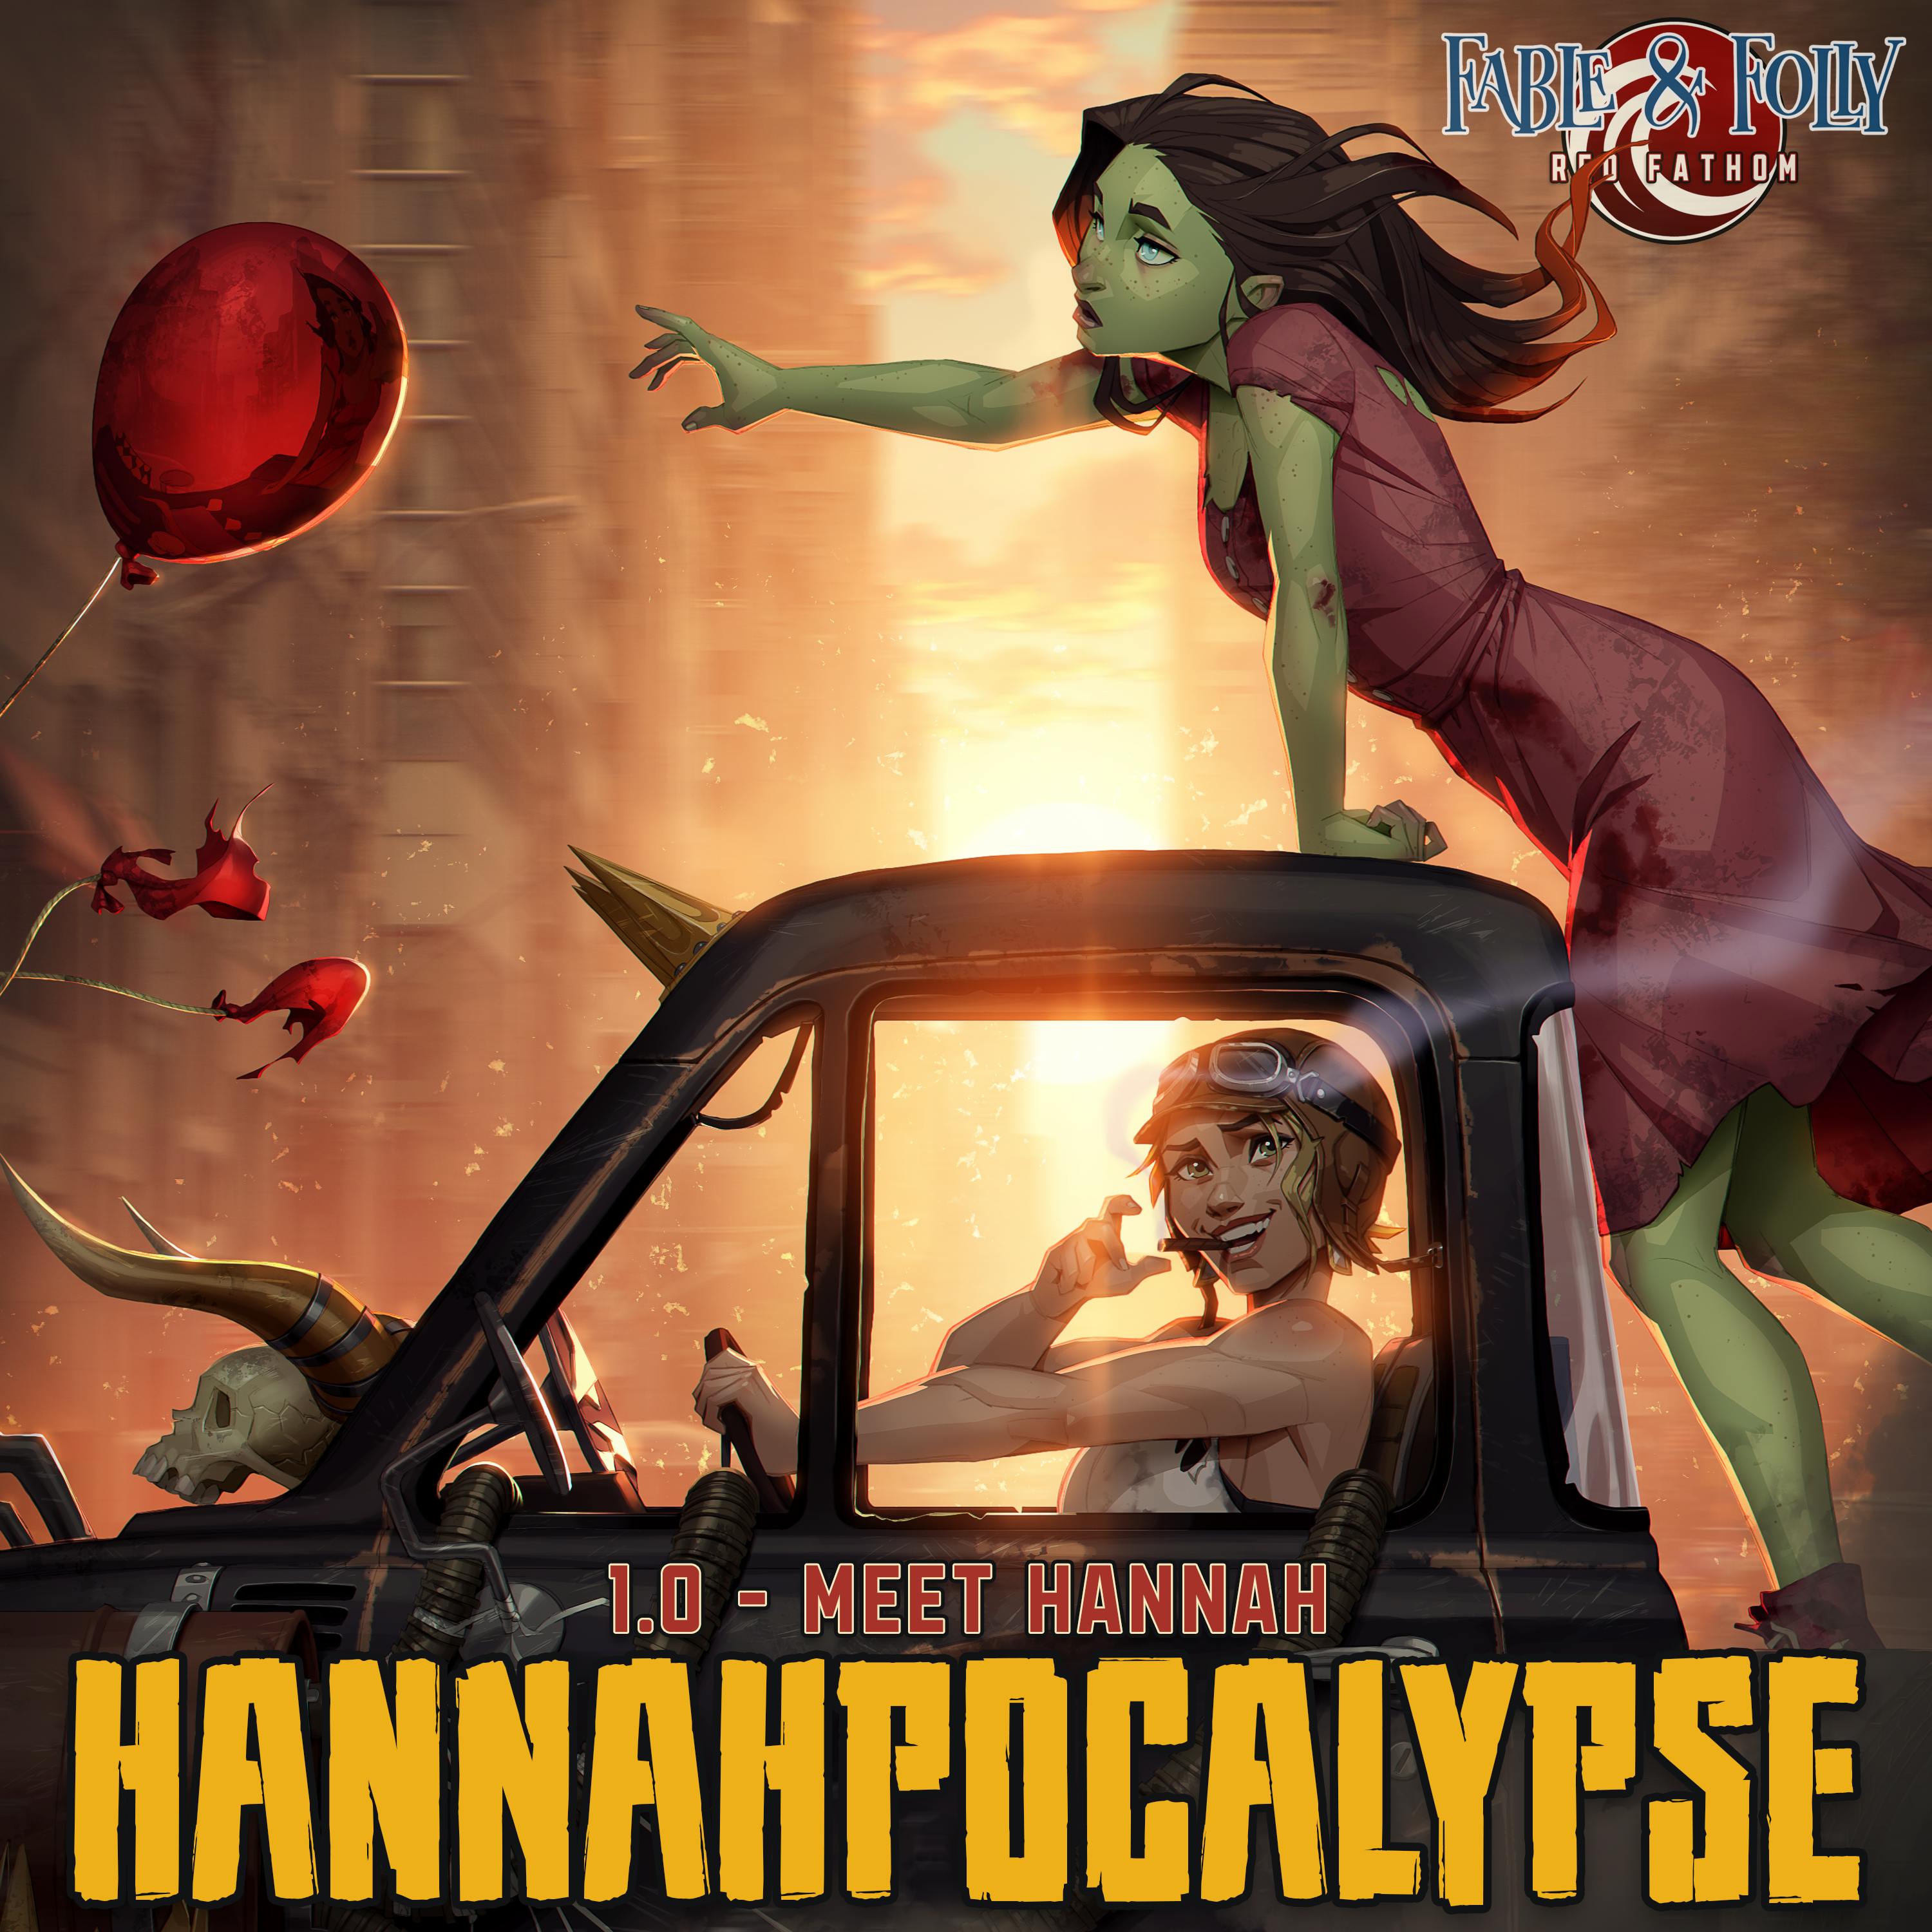 1.0 - Meet Hannah